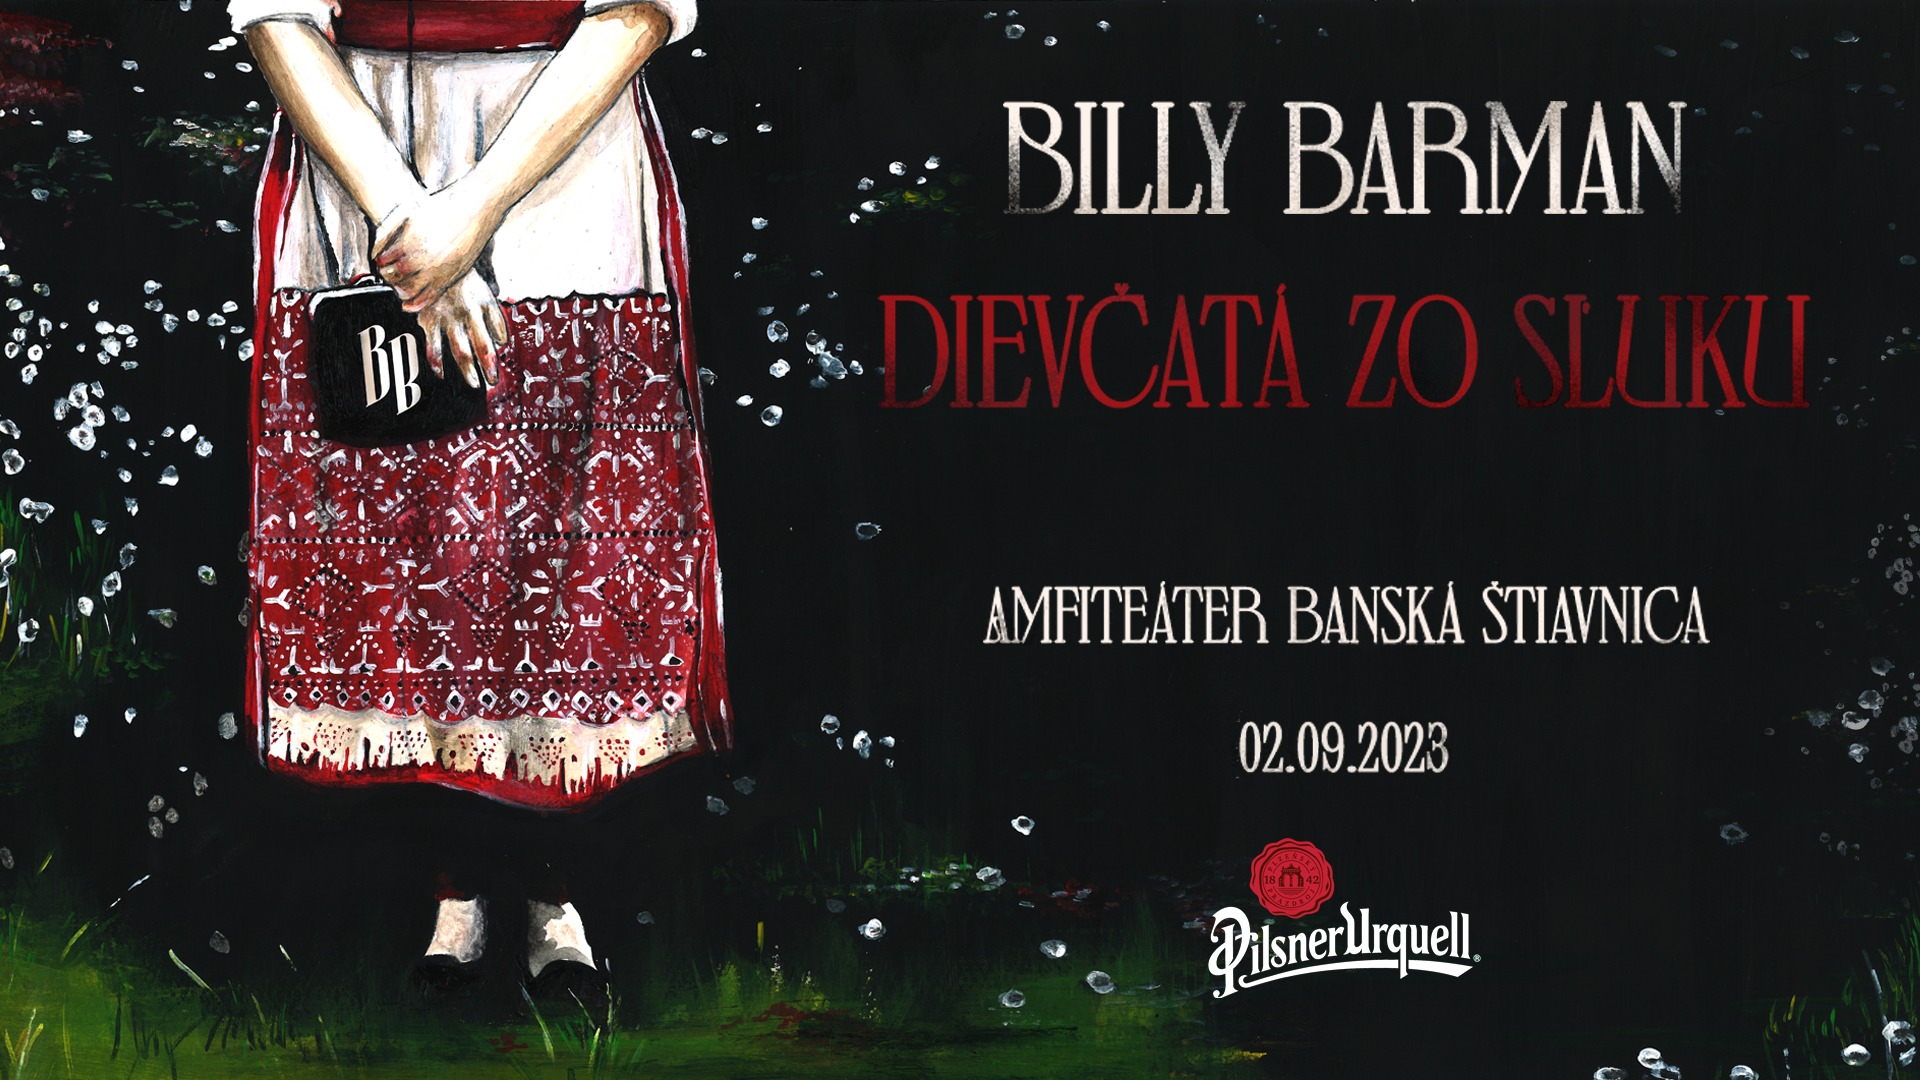 Billy Barman & dievčatá zo SĽUK-u // Amfiteáter Banská Štiavnica